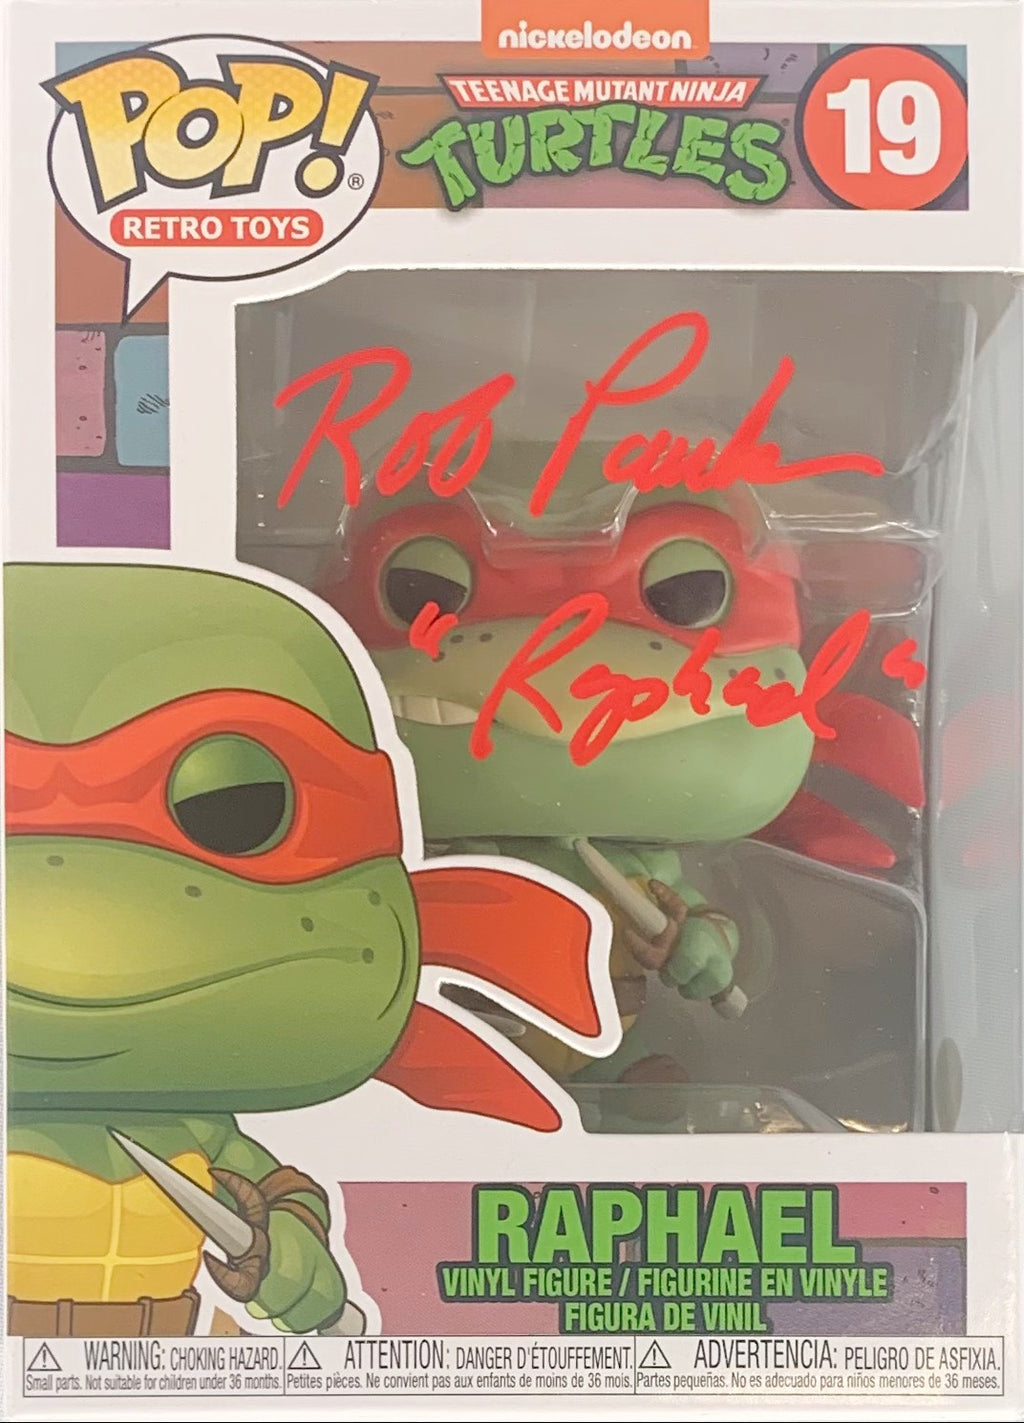 Rob Paulsen signed inscribed Funko Pop Raphael JSA Teenage Mutant Ninja Turtles